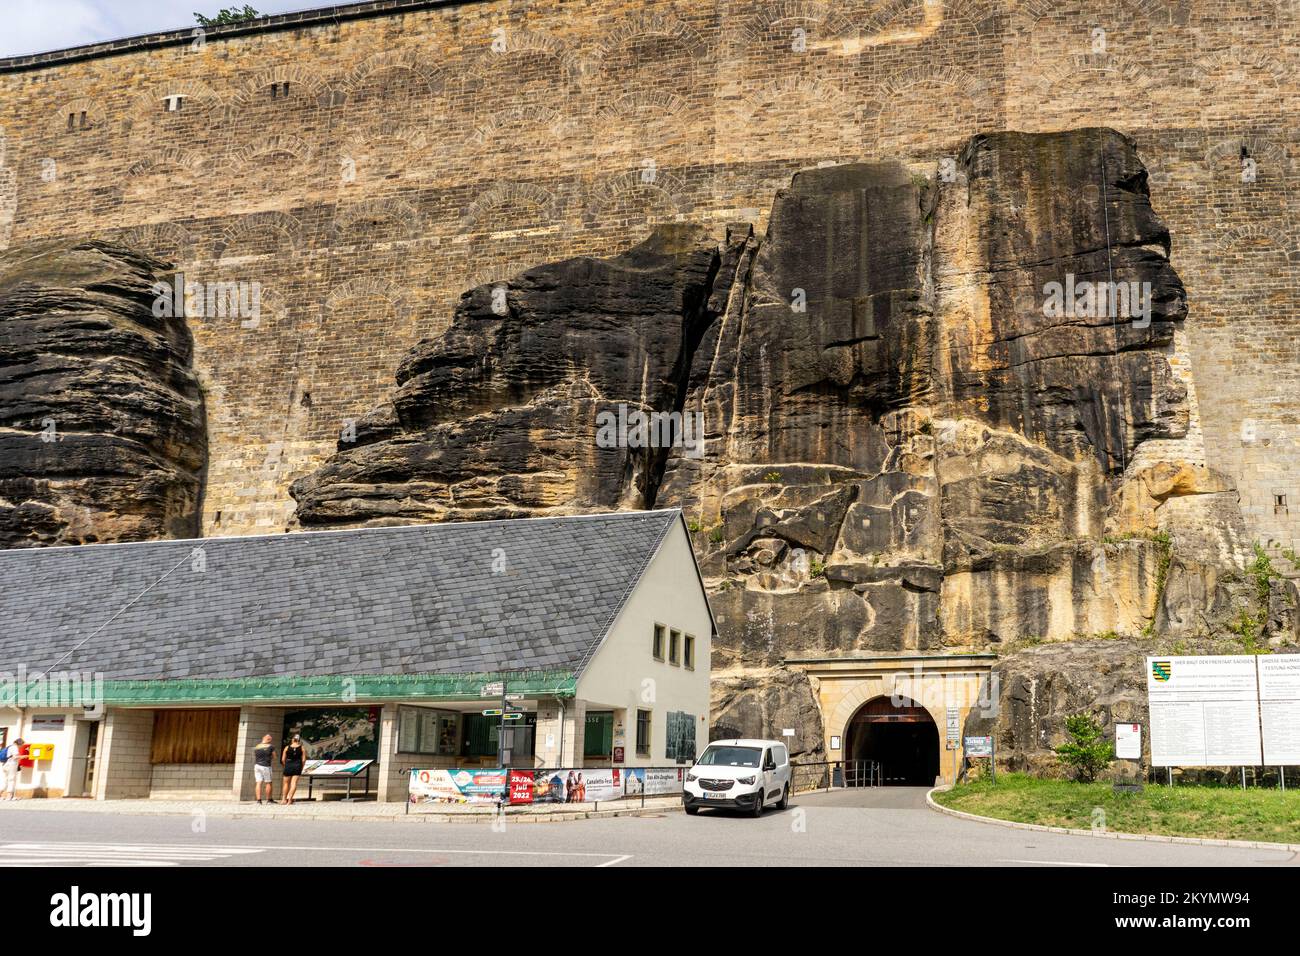 Konigstein es una enorme fortaleza en el sureste de Alemania. Foto de stock